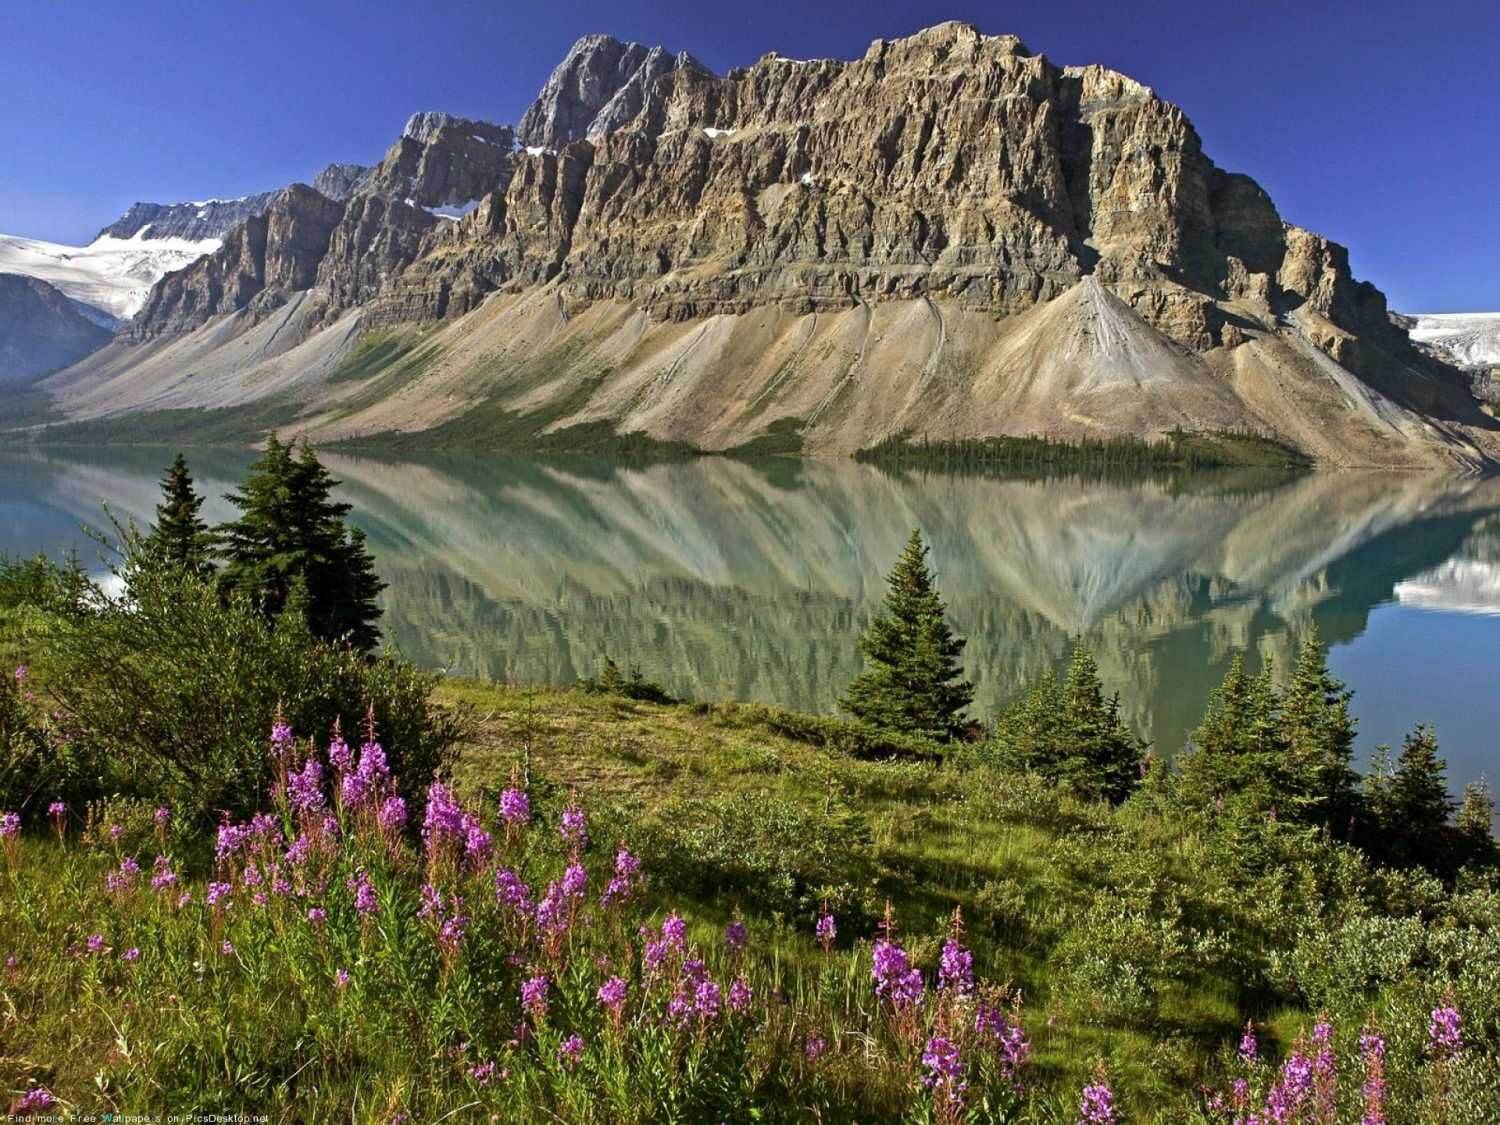 Озеро в Канаде